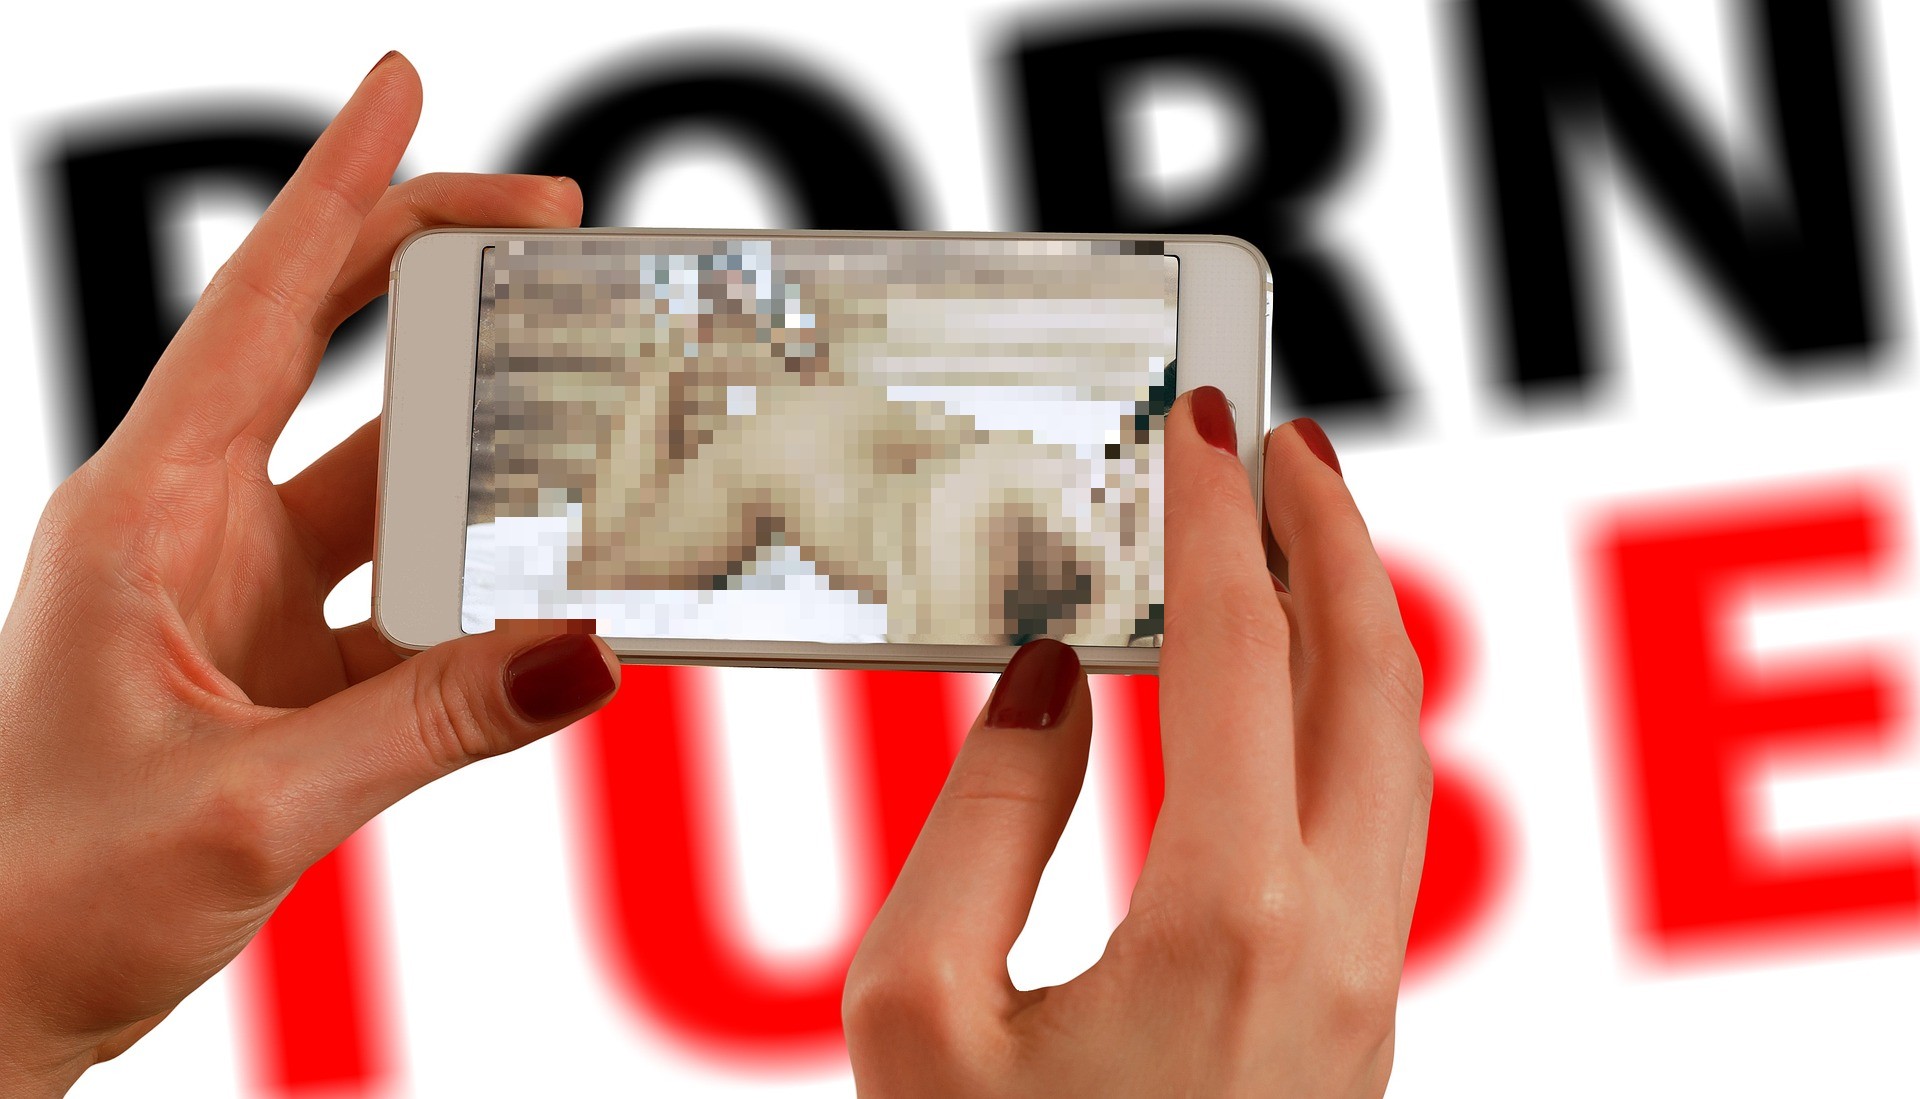 Videos porno, lo más visitado por usuarios cuando Facebook, Instagram y WhatsApp se caen